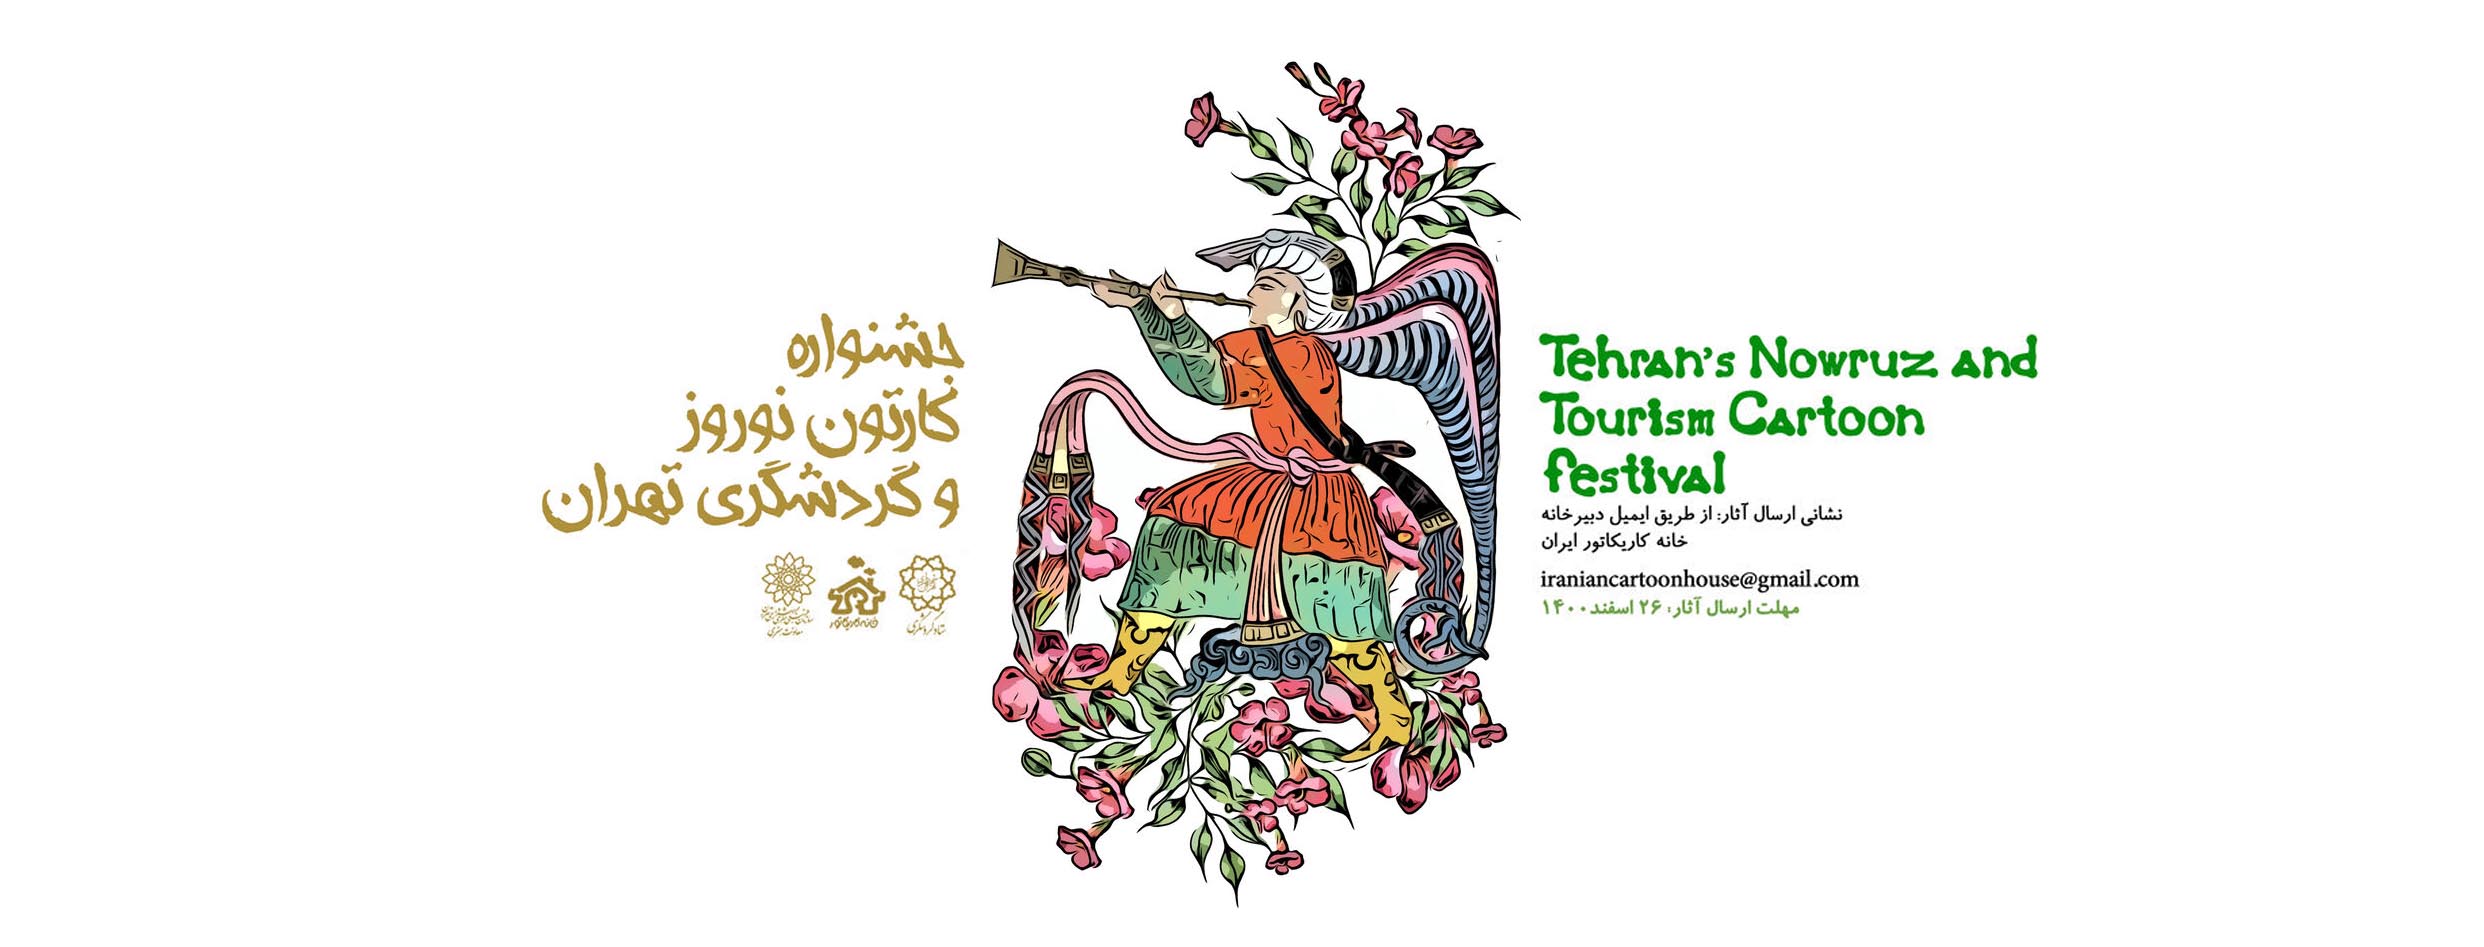 جشنواره کارتون نوروز و گردشگری تهران در بهار 1401 برگزار می شود